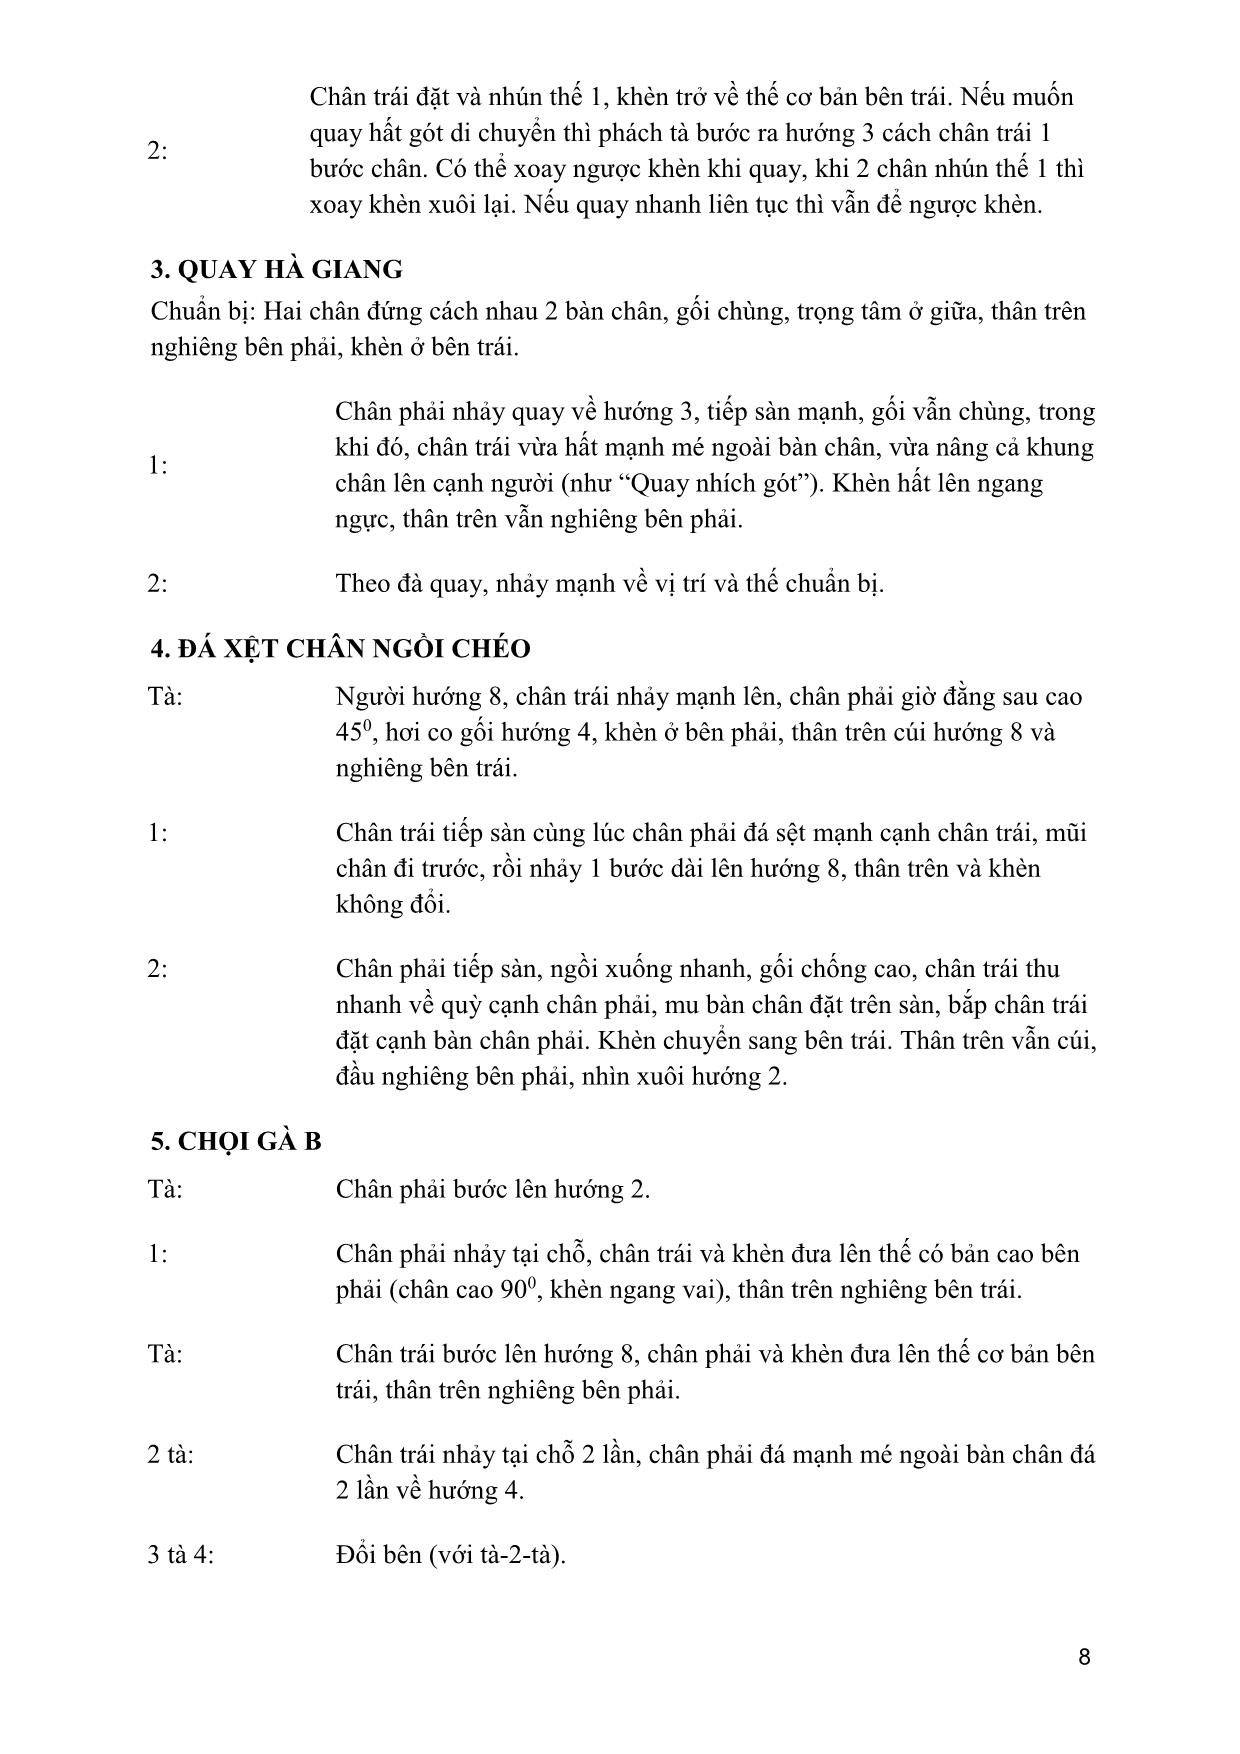 Giáo trình Múa dân gian dân tộc Việt Nam 4 trang 7